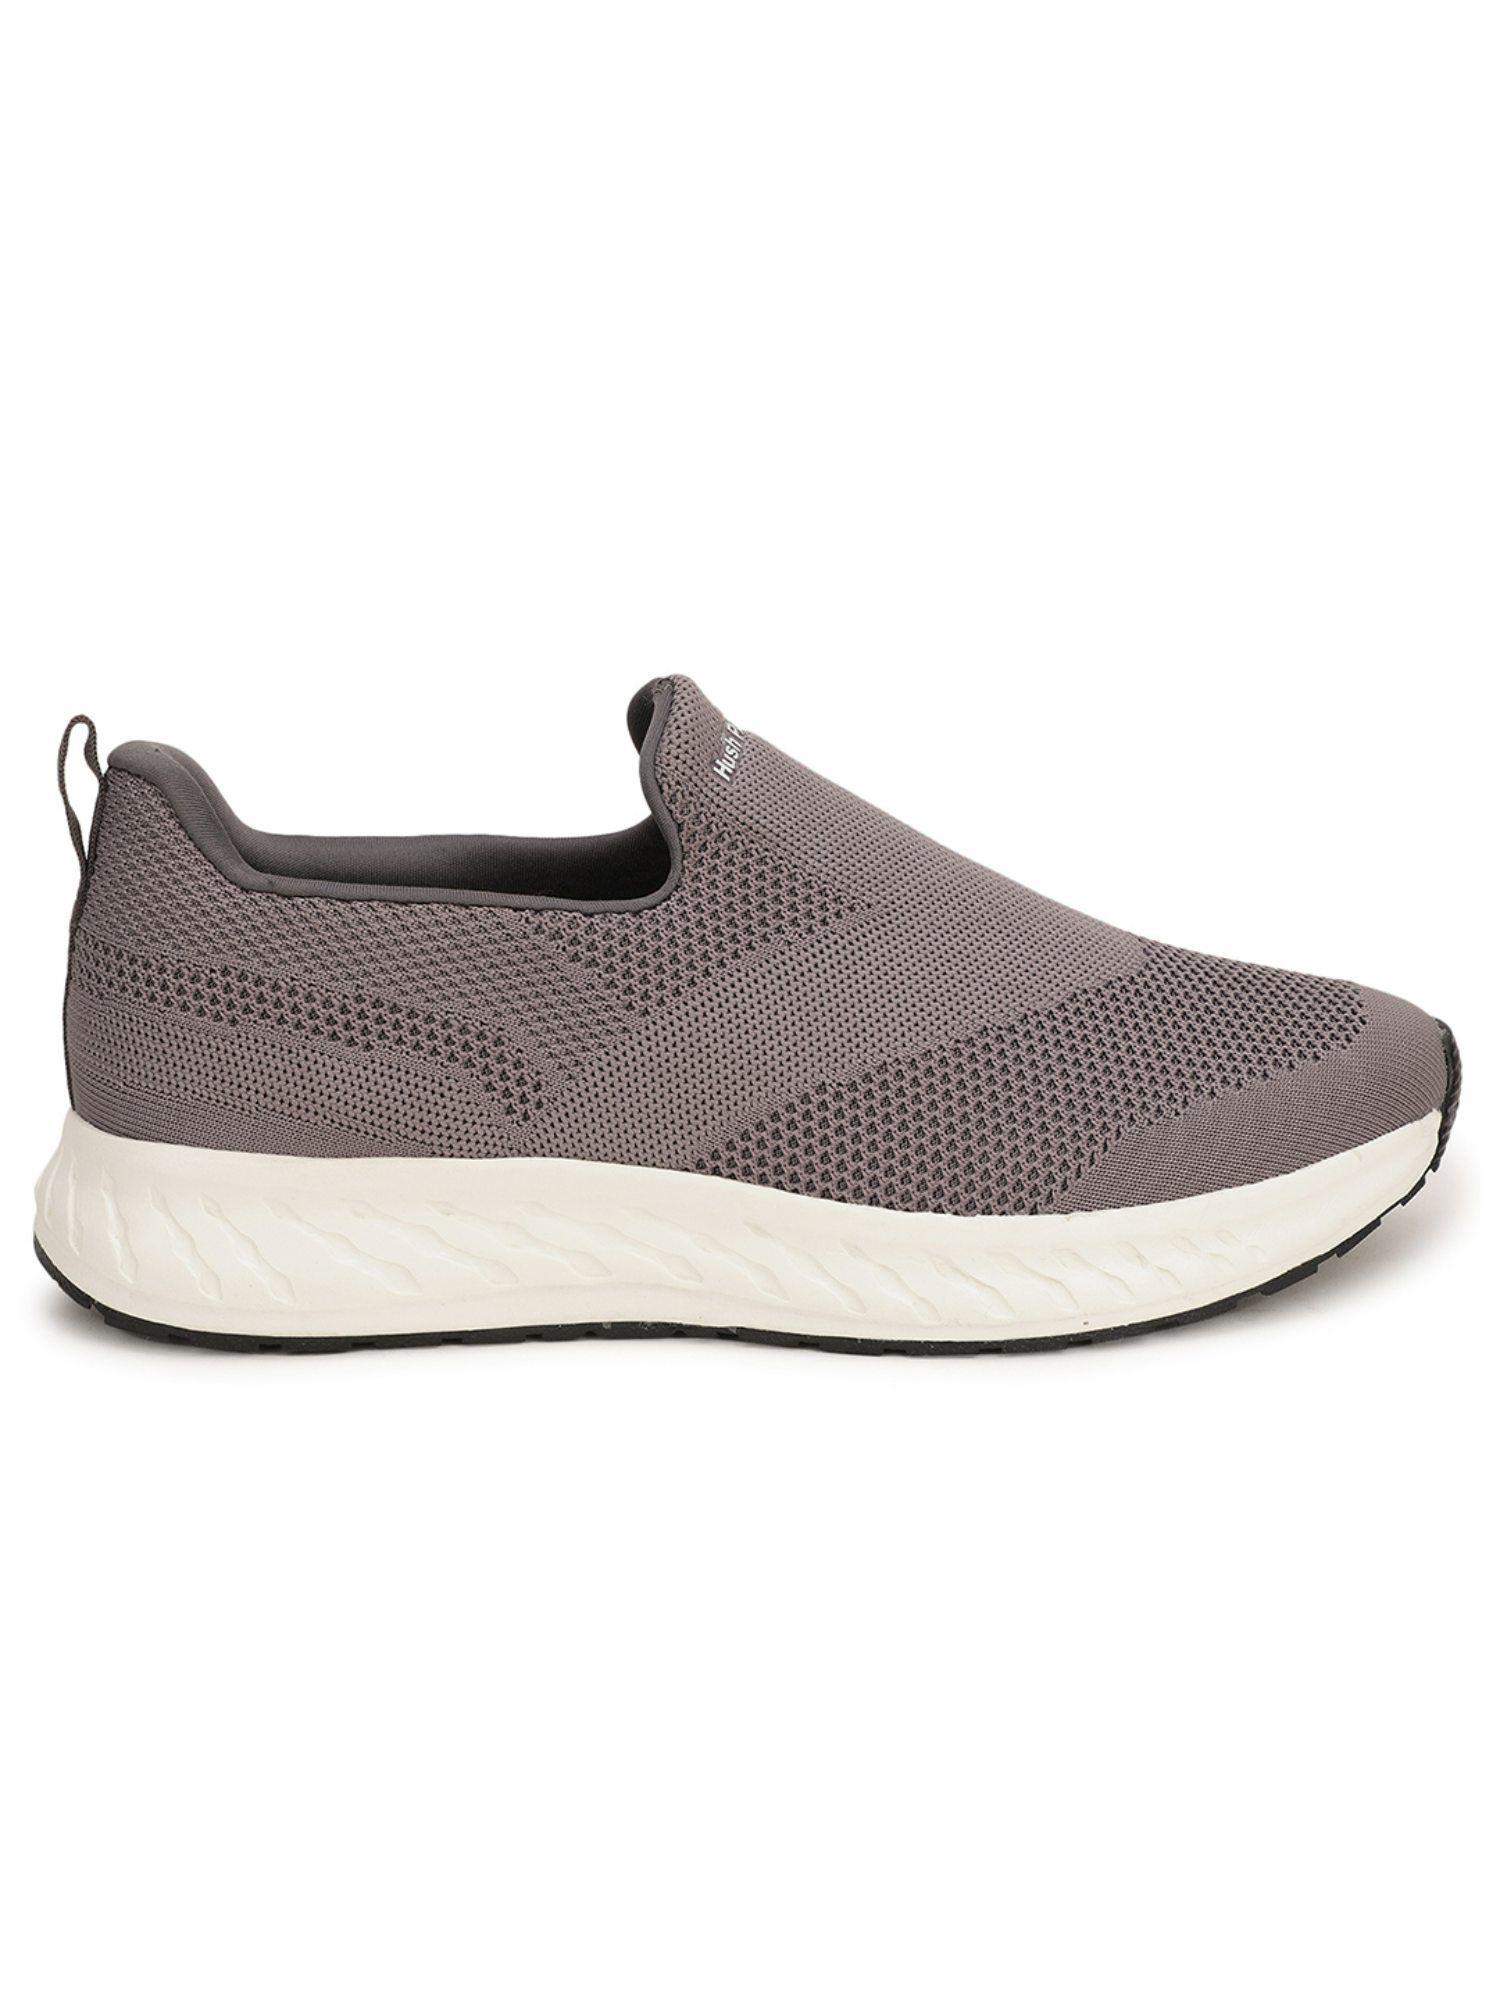 textured-grey-sneakers